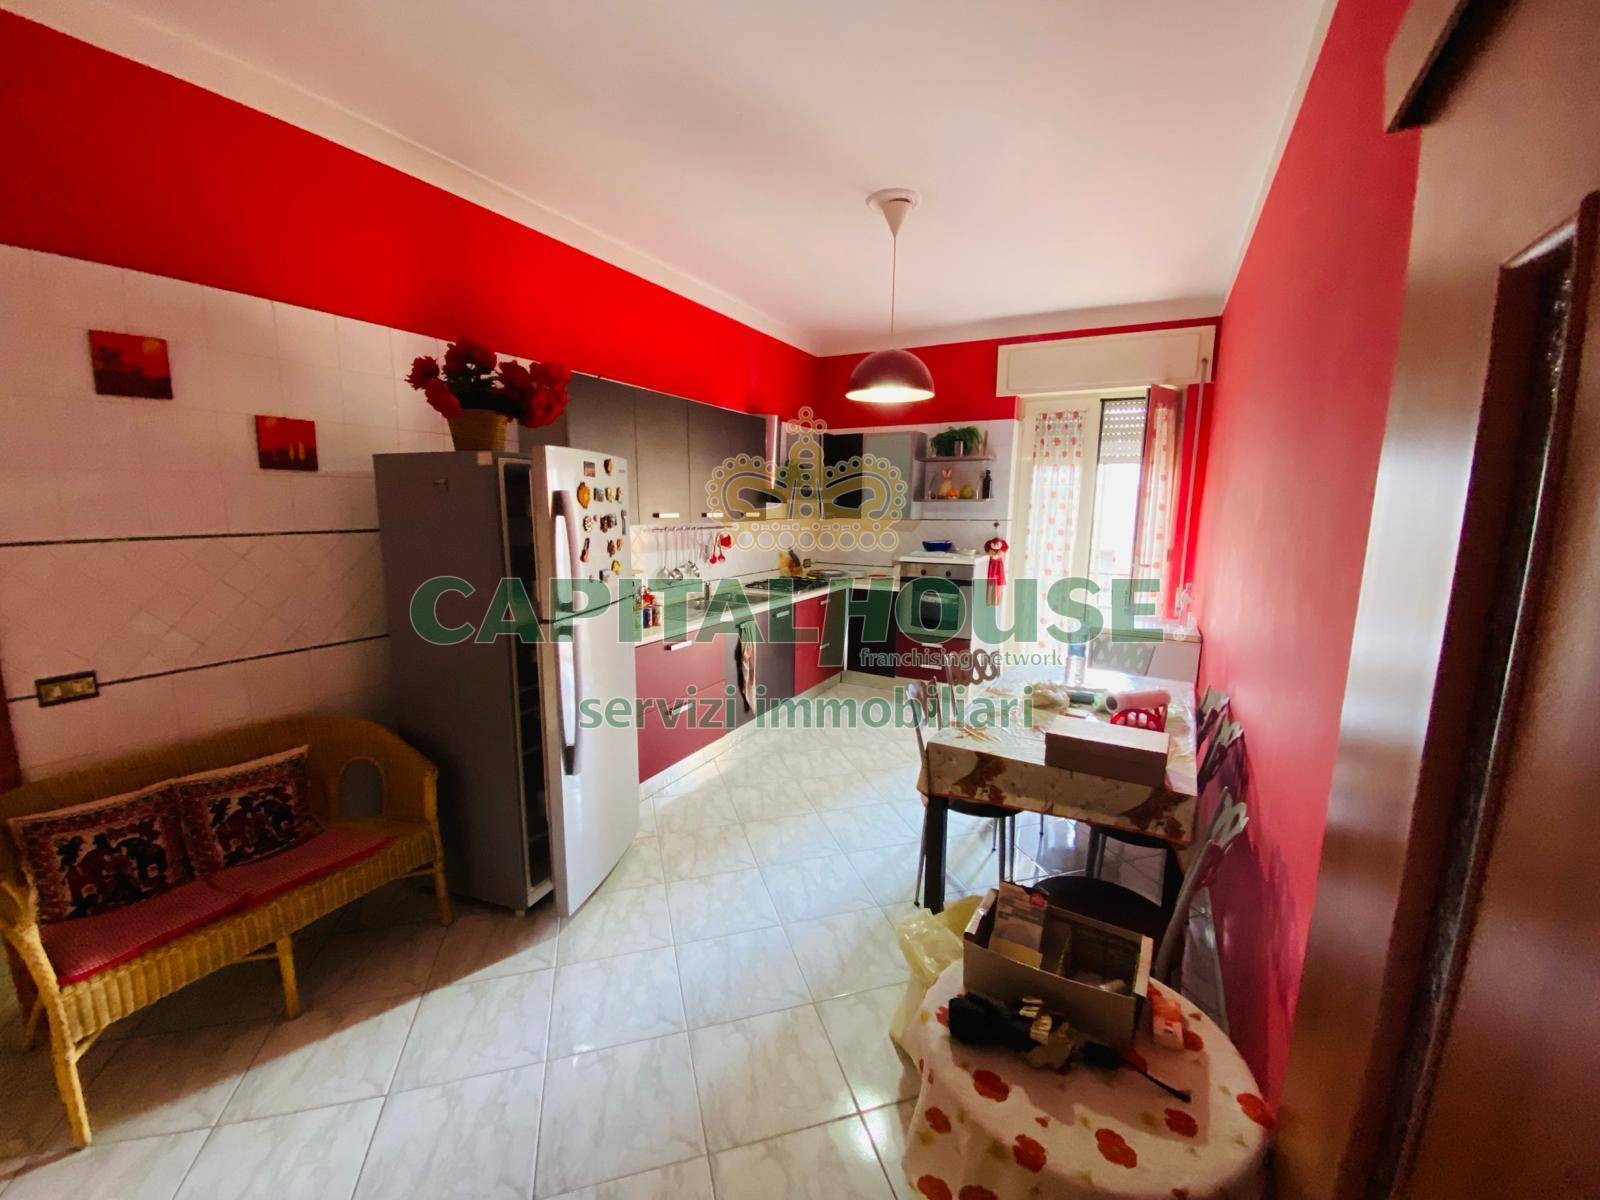 Appartamento in vendita a Marigliano, 4 locali, prezzo € 175.000 | PortaleAgenzieImmobiliari.it